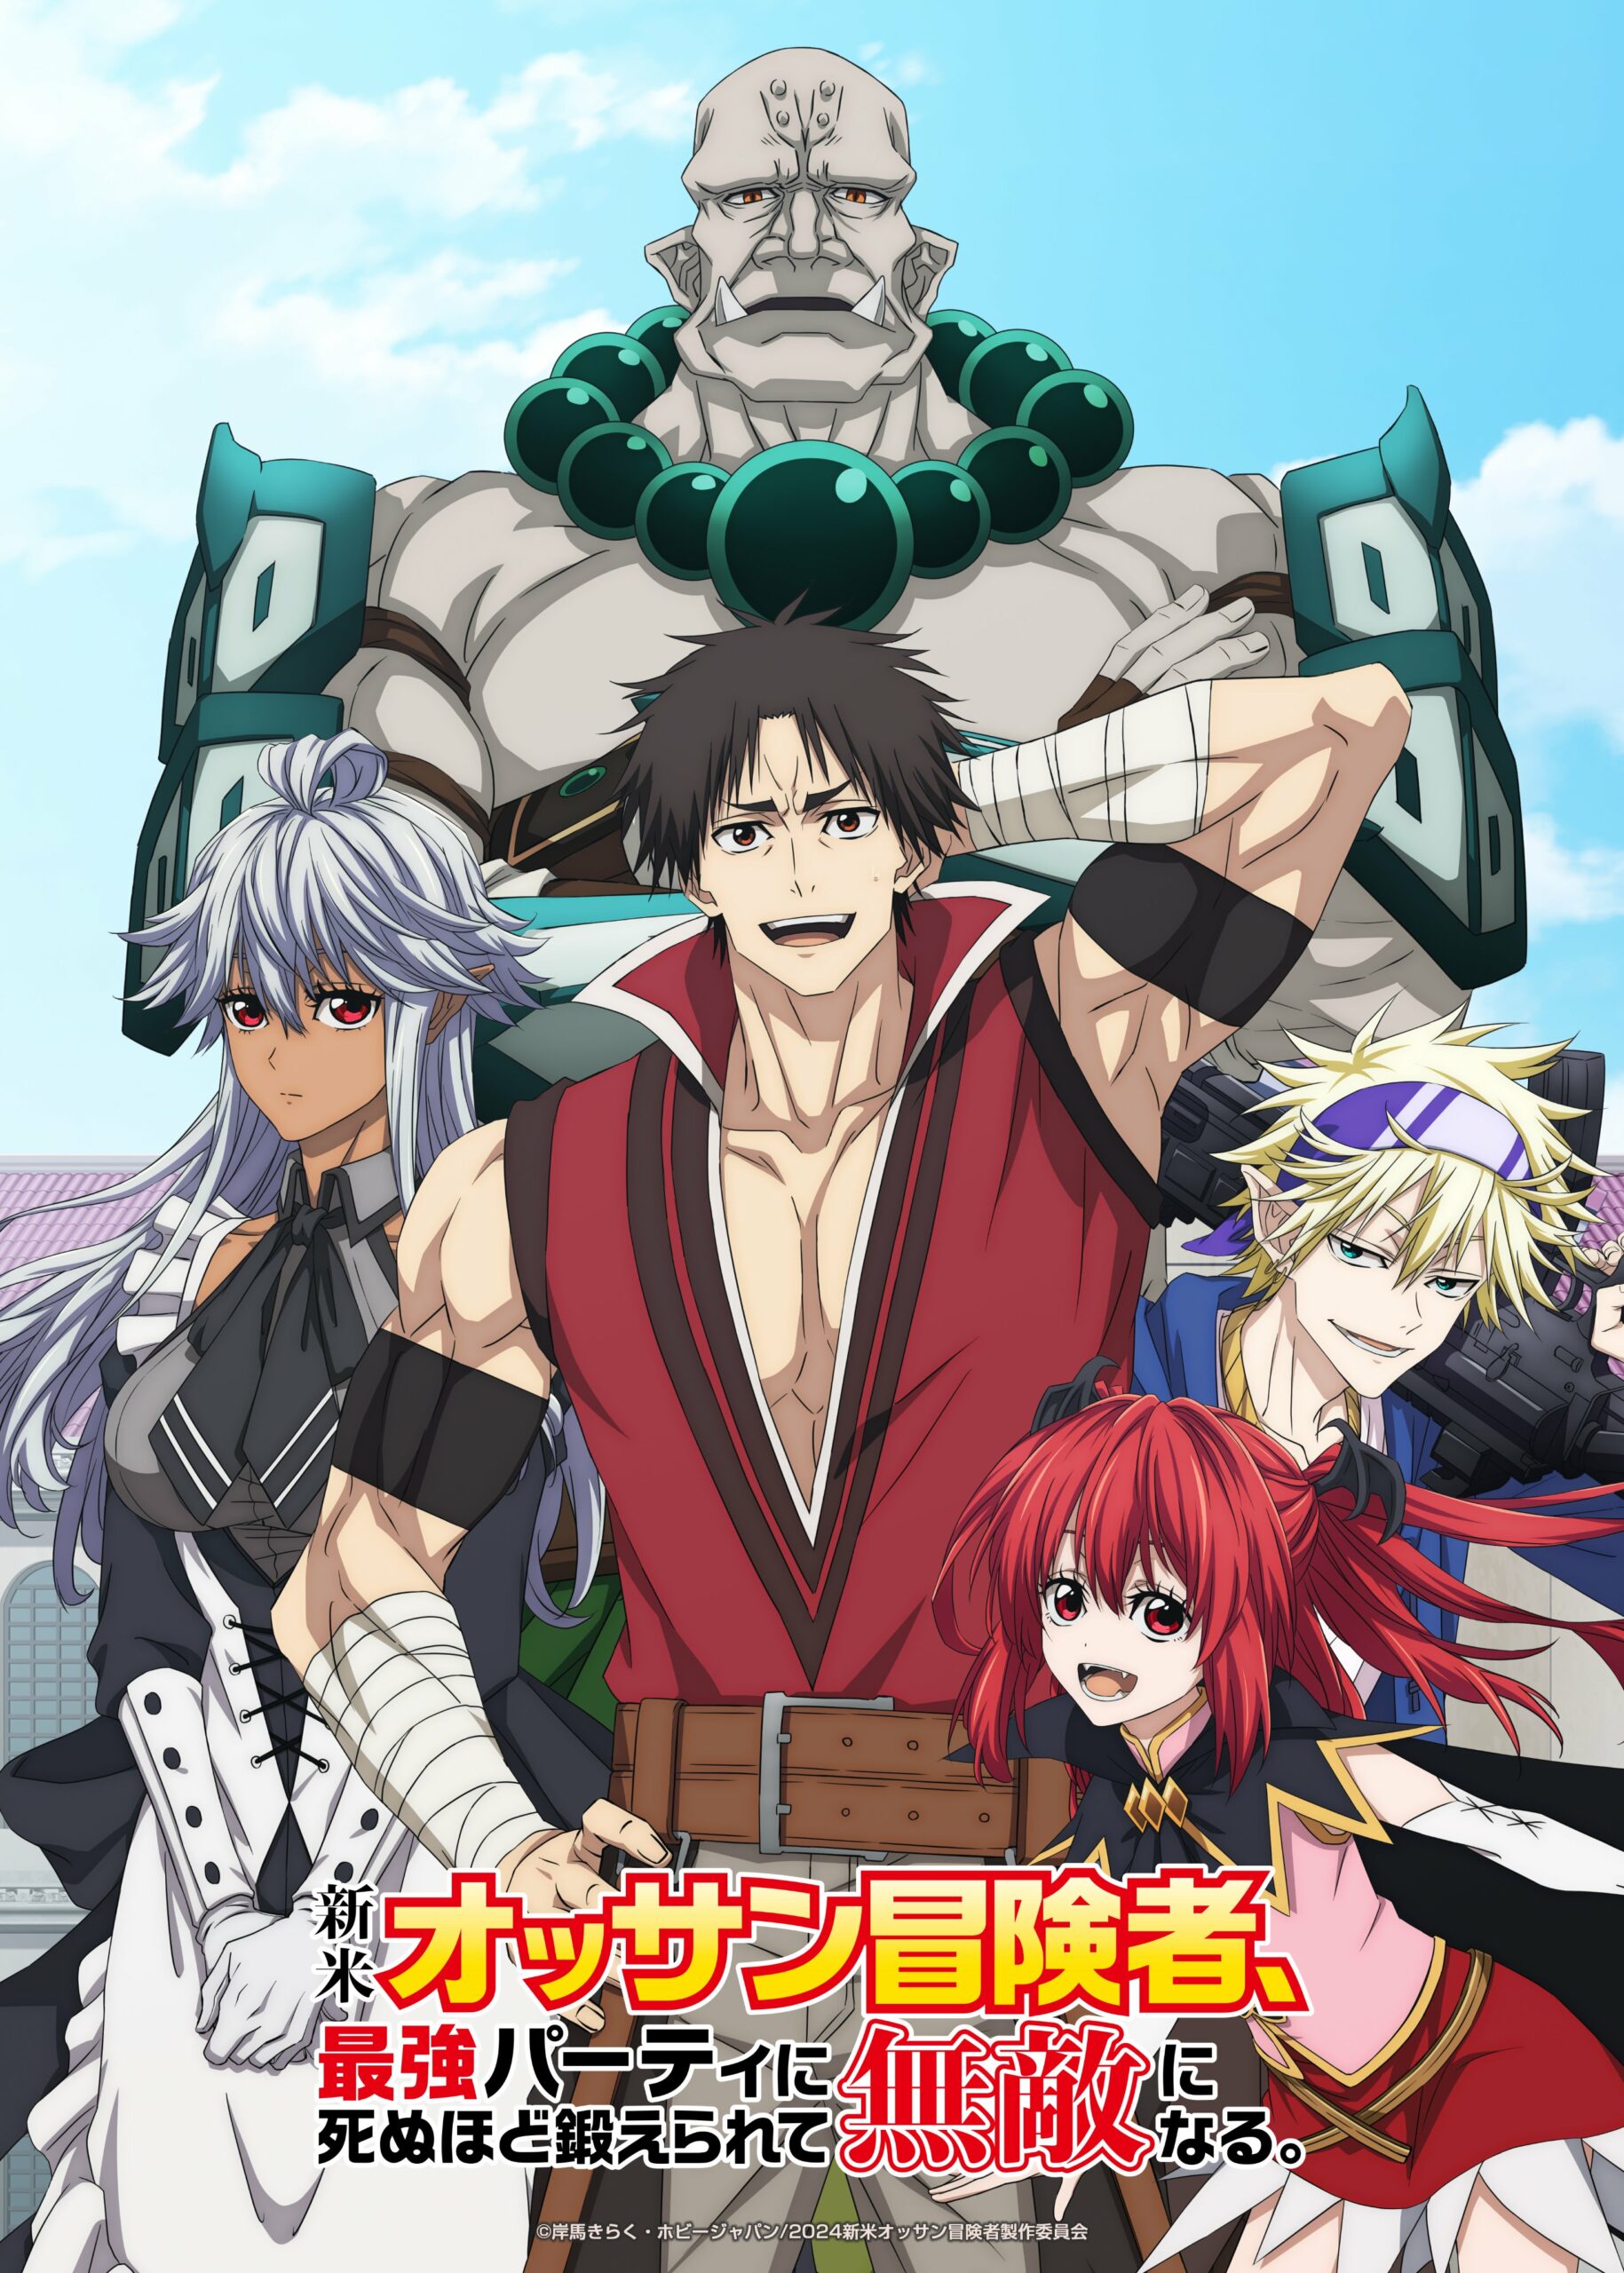 Registro de Ragnarok Anime: Release Info, Visuals & Trailers